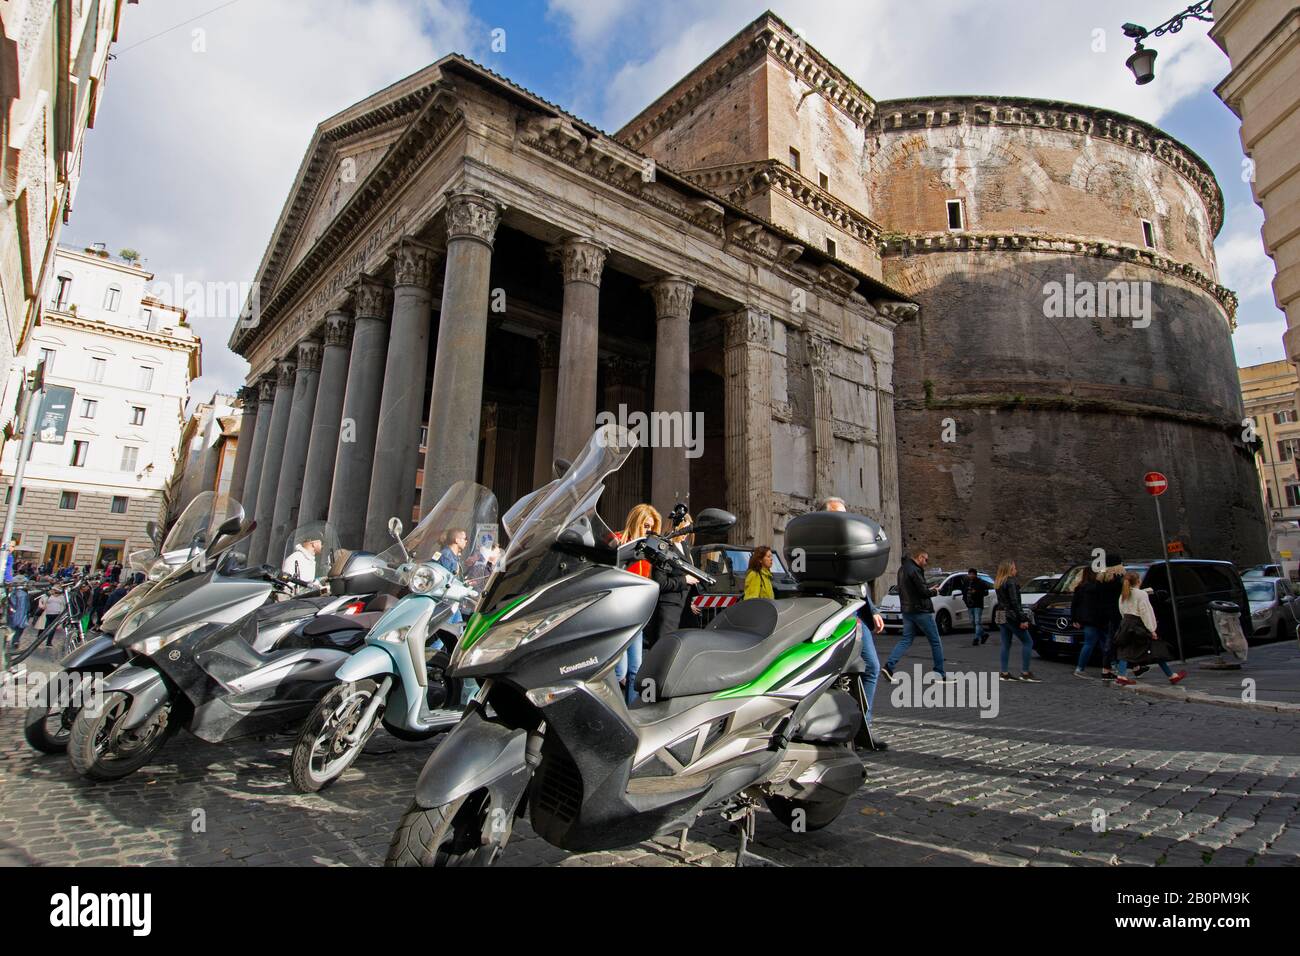 Vor dem Pantheon geparkte Motorräder, ein gut erhaltener ehemaliger römischer Tempel, der 126 n. Chr. gewidmet wurde, Rom, Italien Stockfoto